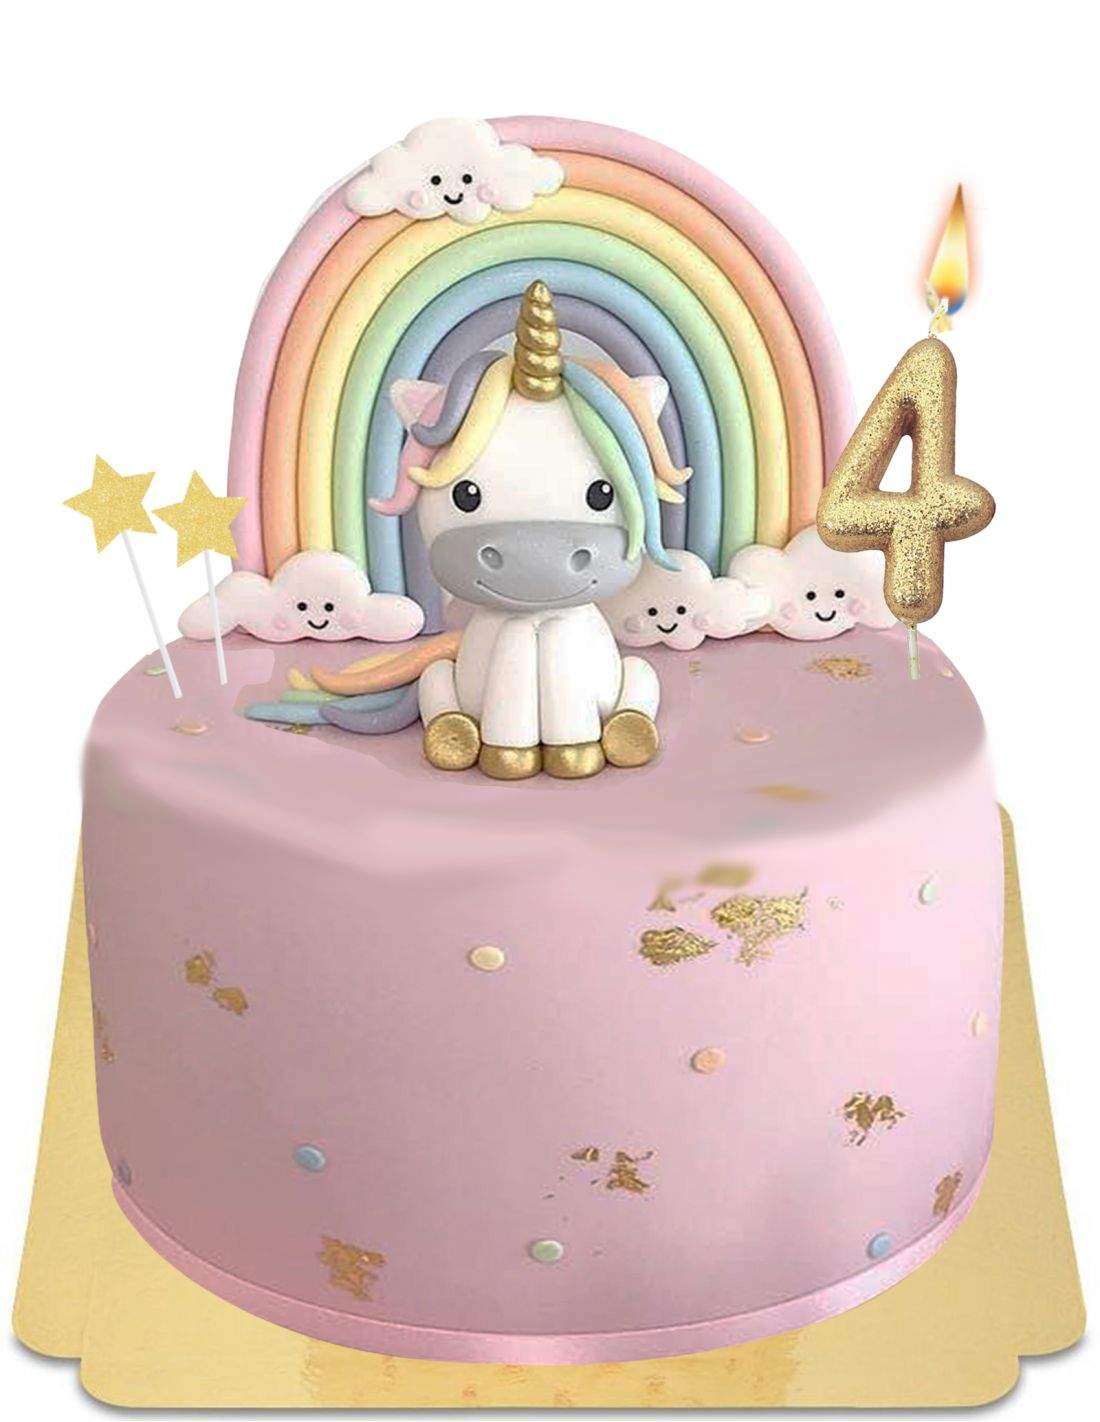 Décoration de gâteau licorne arc-en-ciel pour enfants, fête d